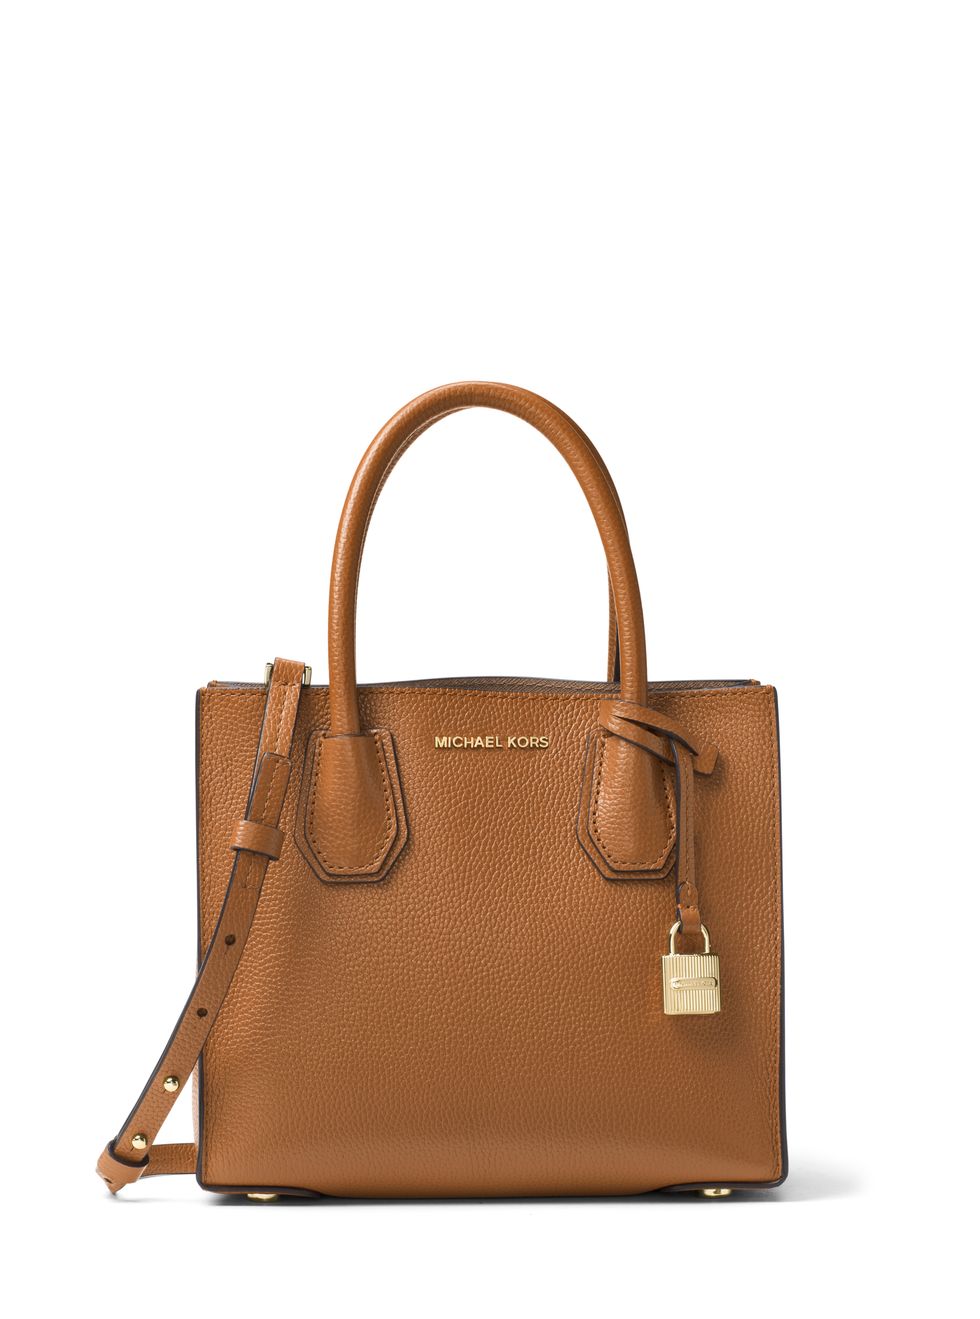 Handbag, Bag, Leather, Brown, Fashion accessory, Tan, Shoulder bag, Tote bag, Beige, Material property, 